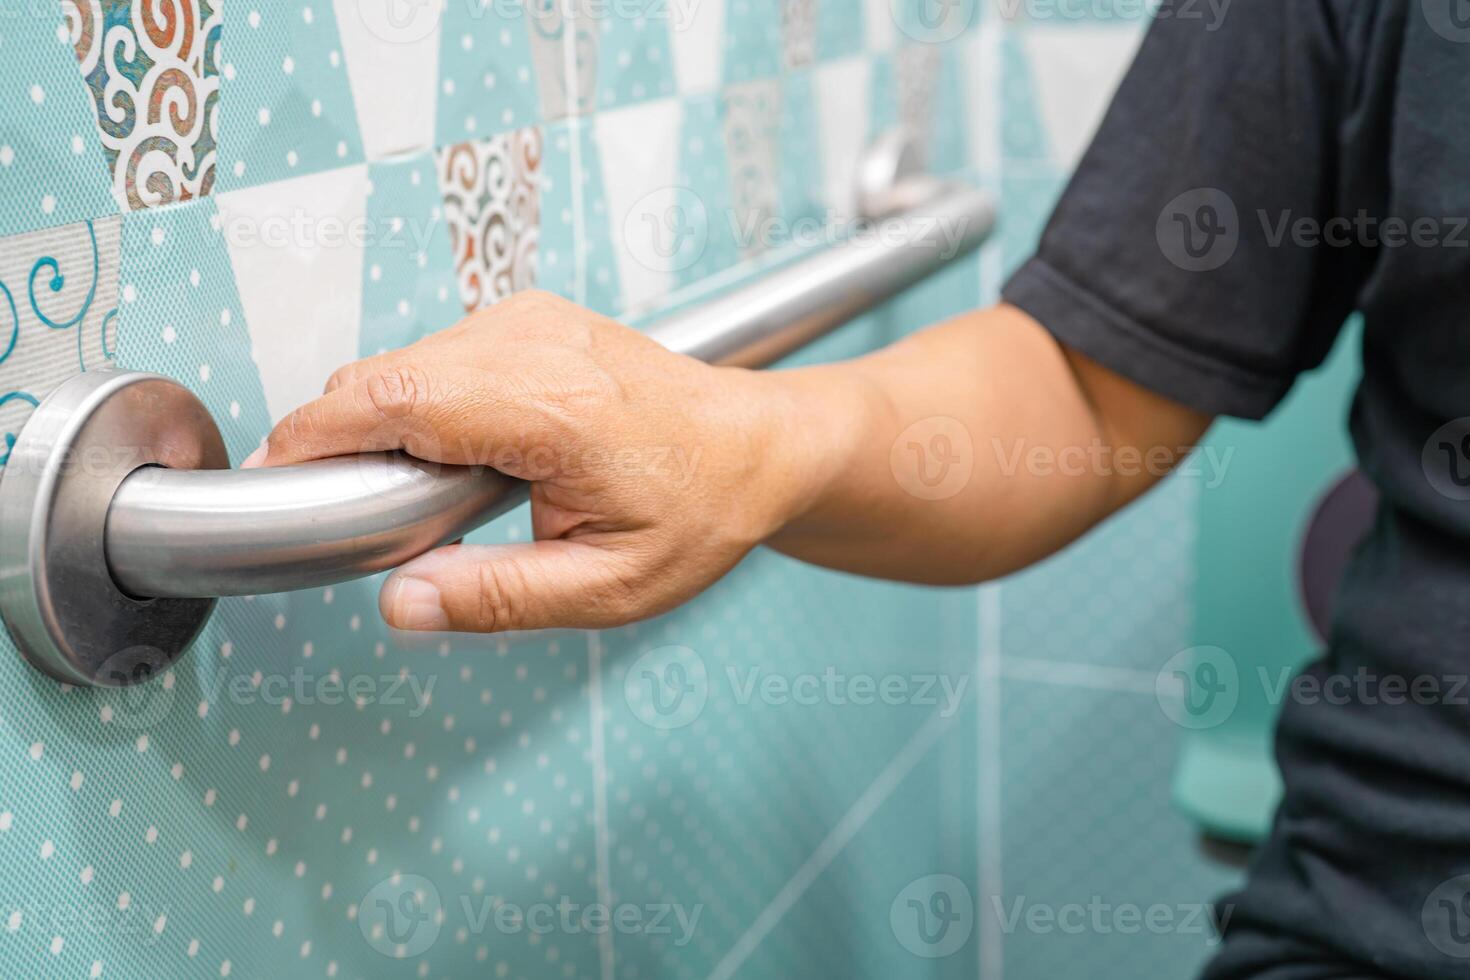 asiático mayor mujer utilizar baño baño encargarse de seguridad, sano fuerte médico concepto. foto